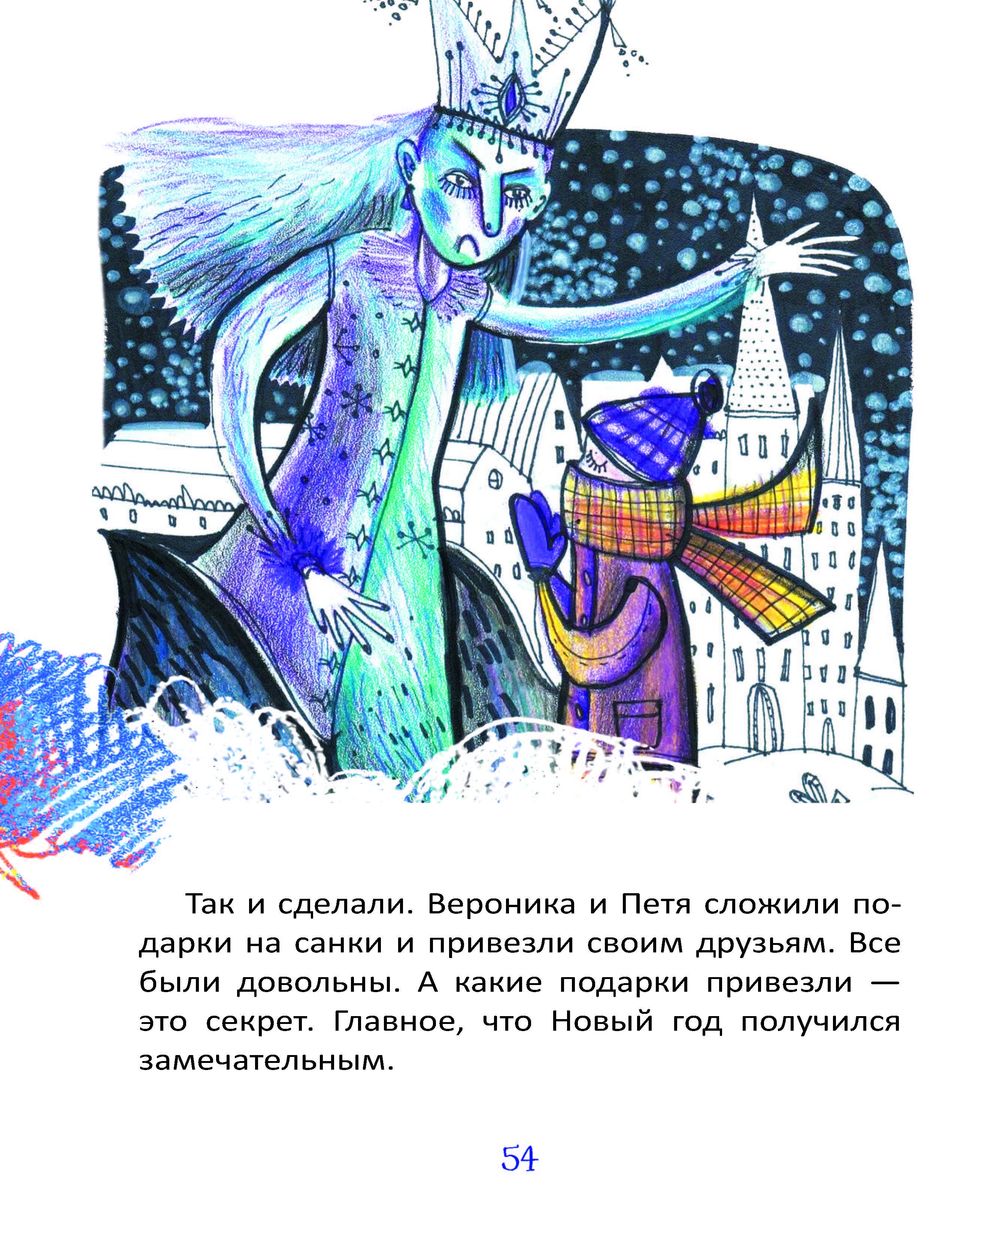 члены сказа в белорусском языке фото 102